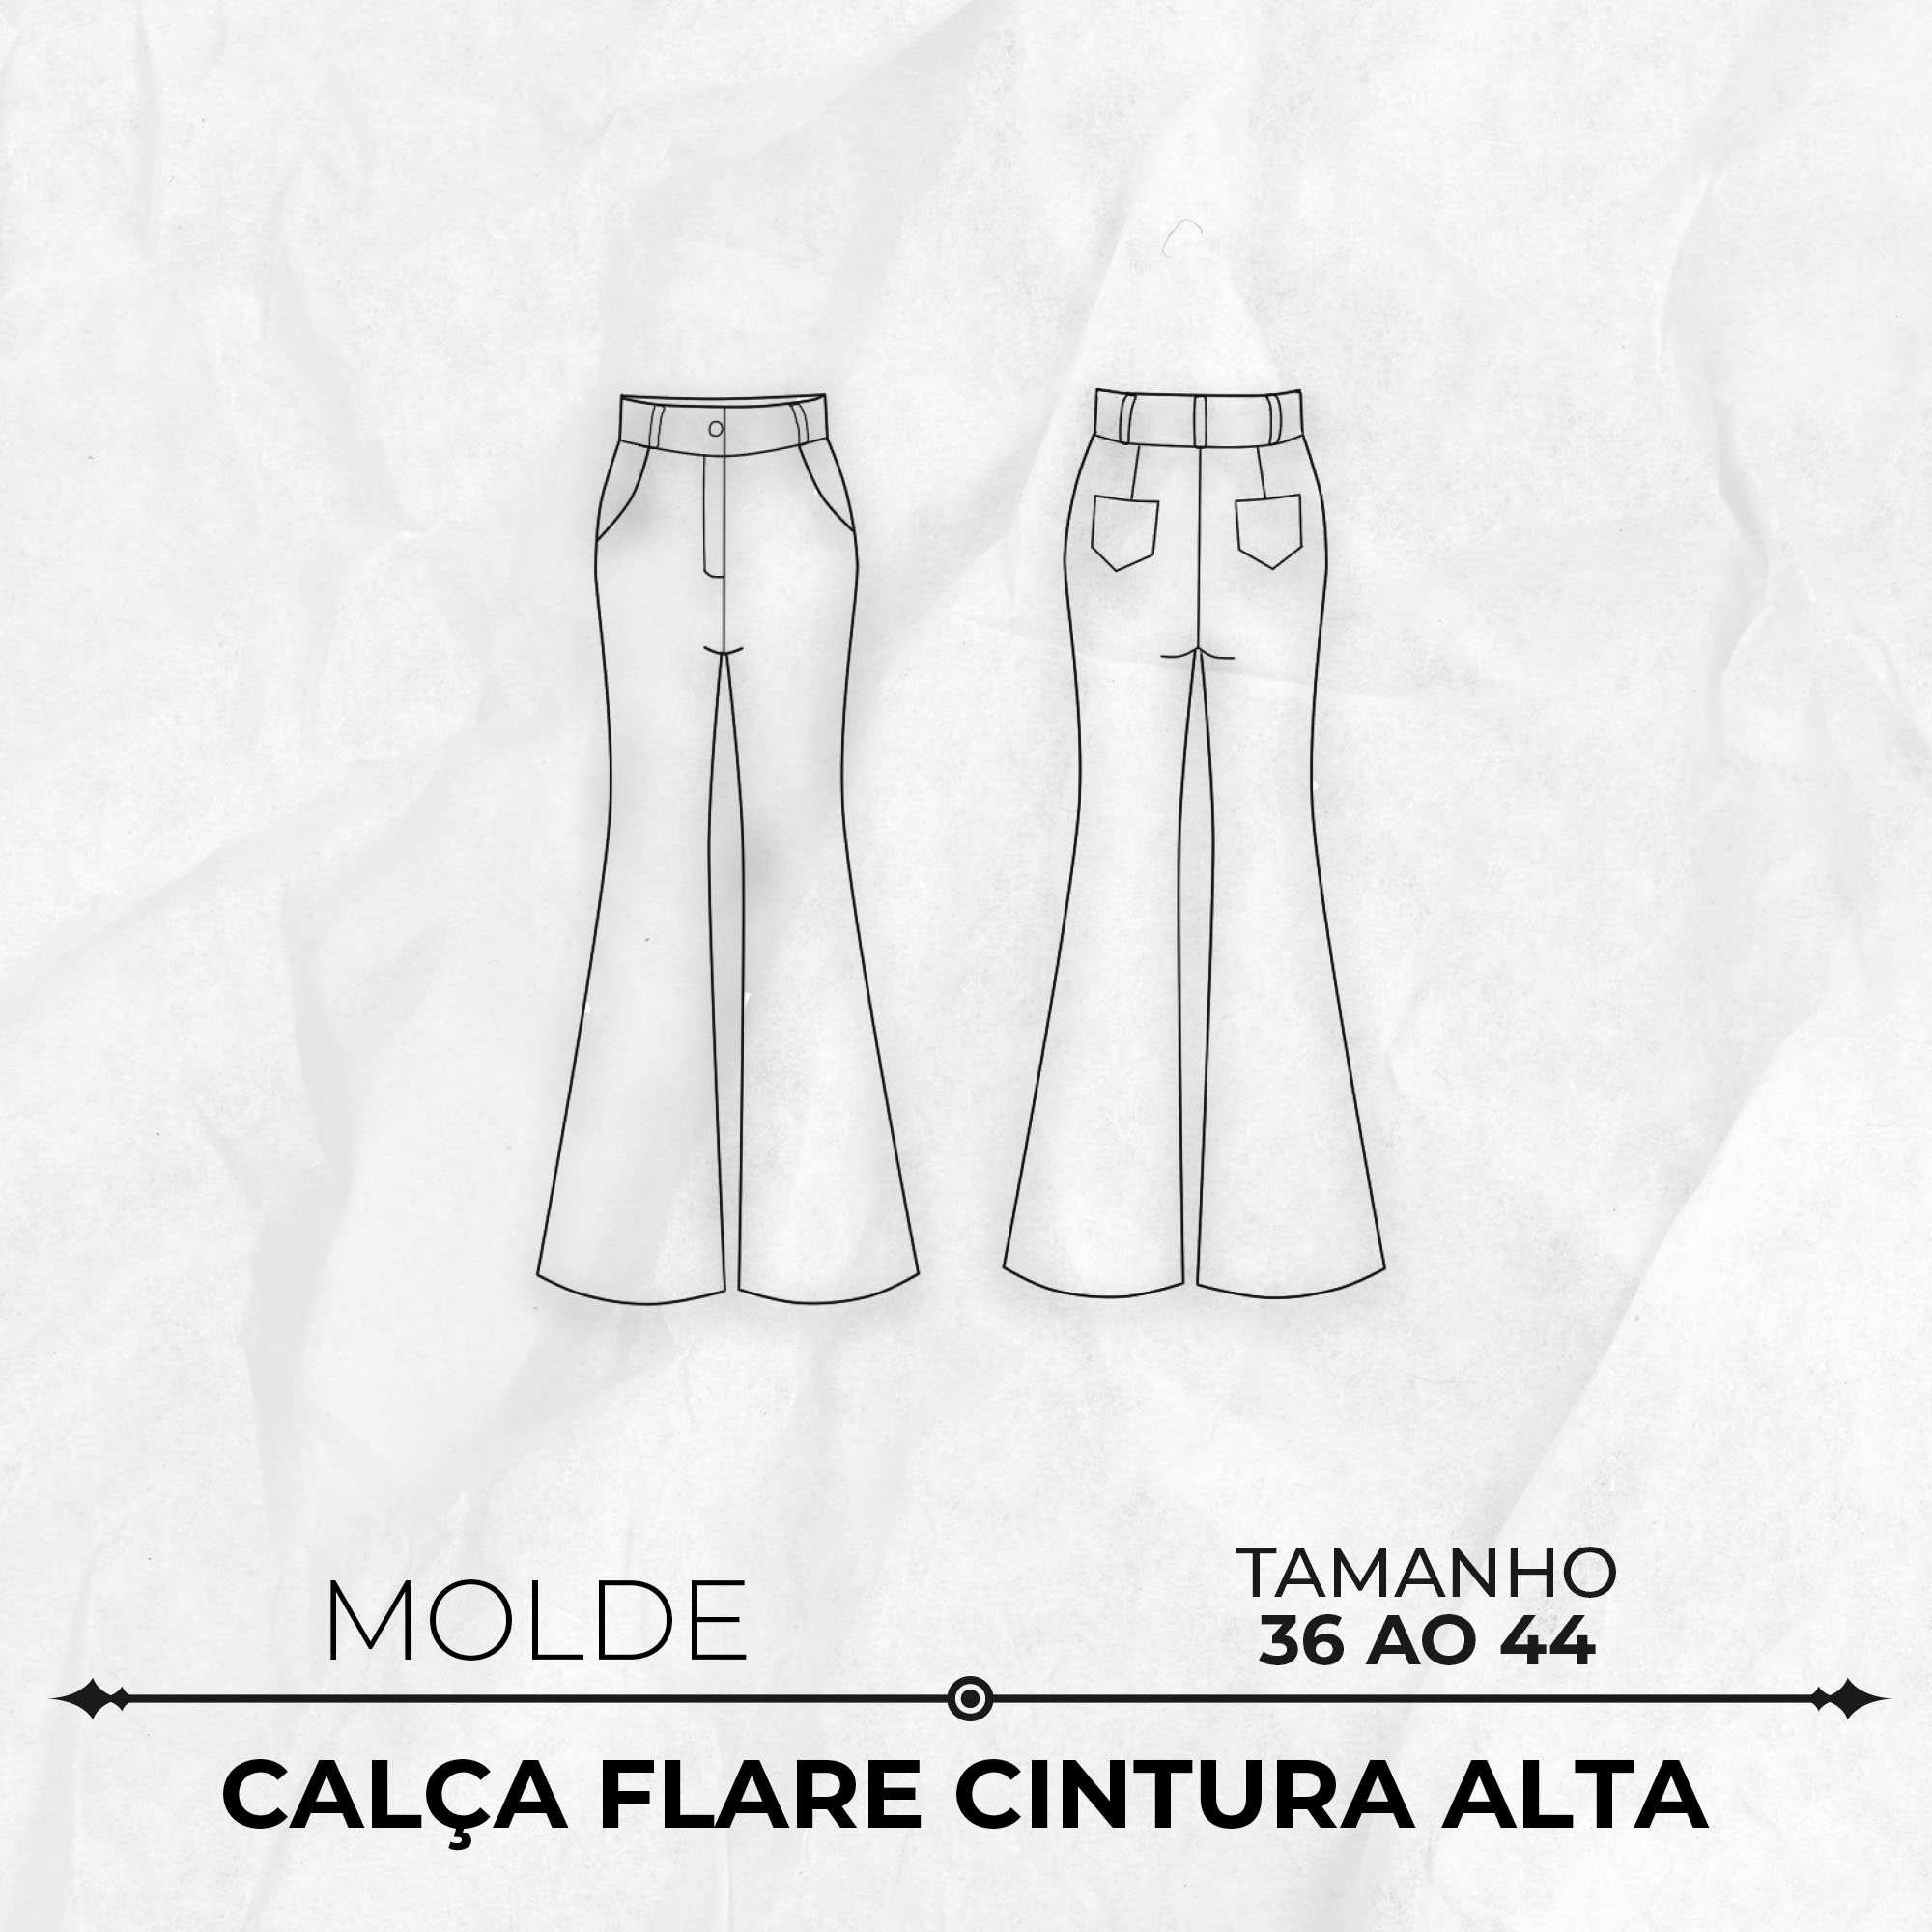 Molde-Calca-Flare-Cintura-Alta-by-Wania-Machado-36-ao-44-CAPA